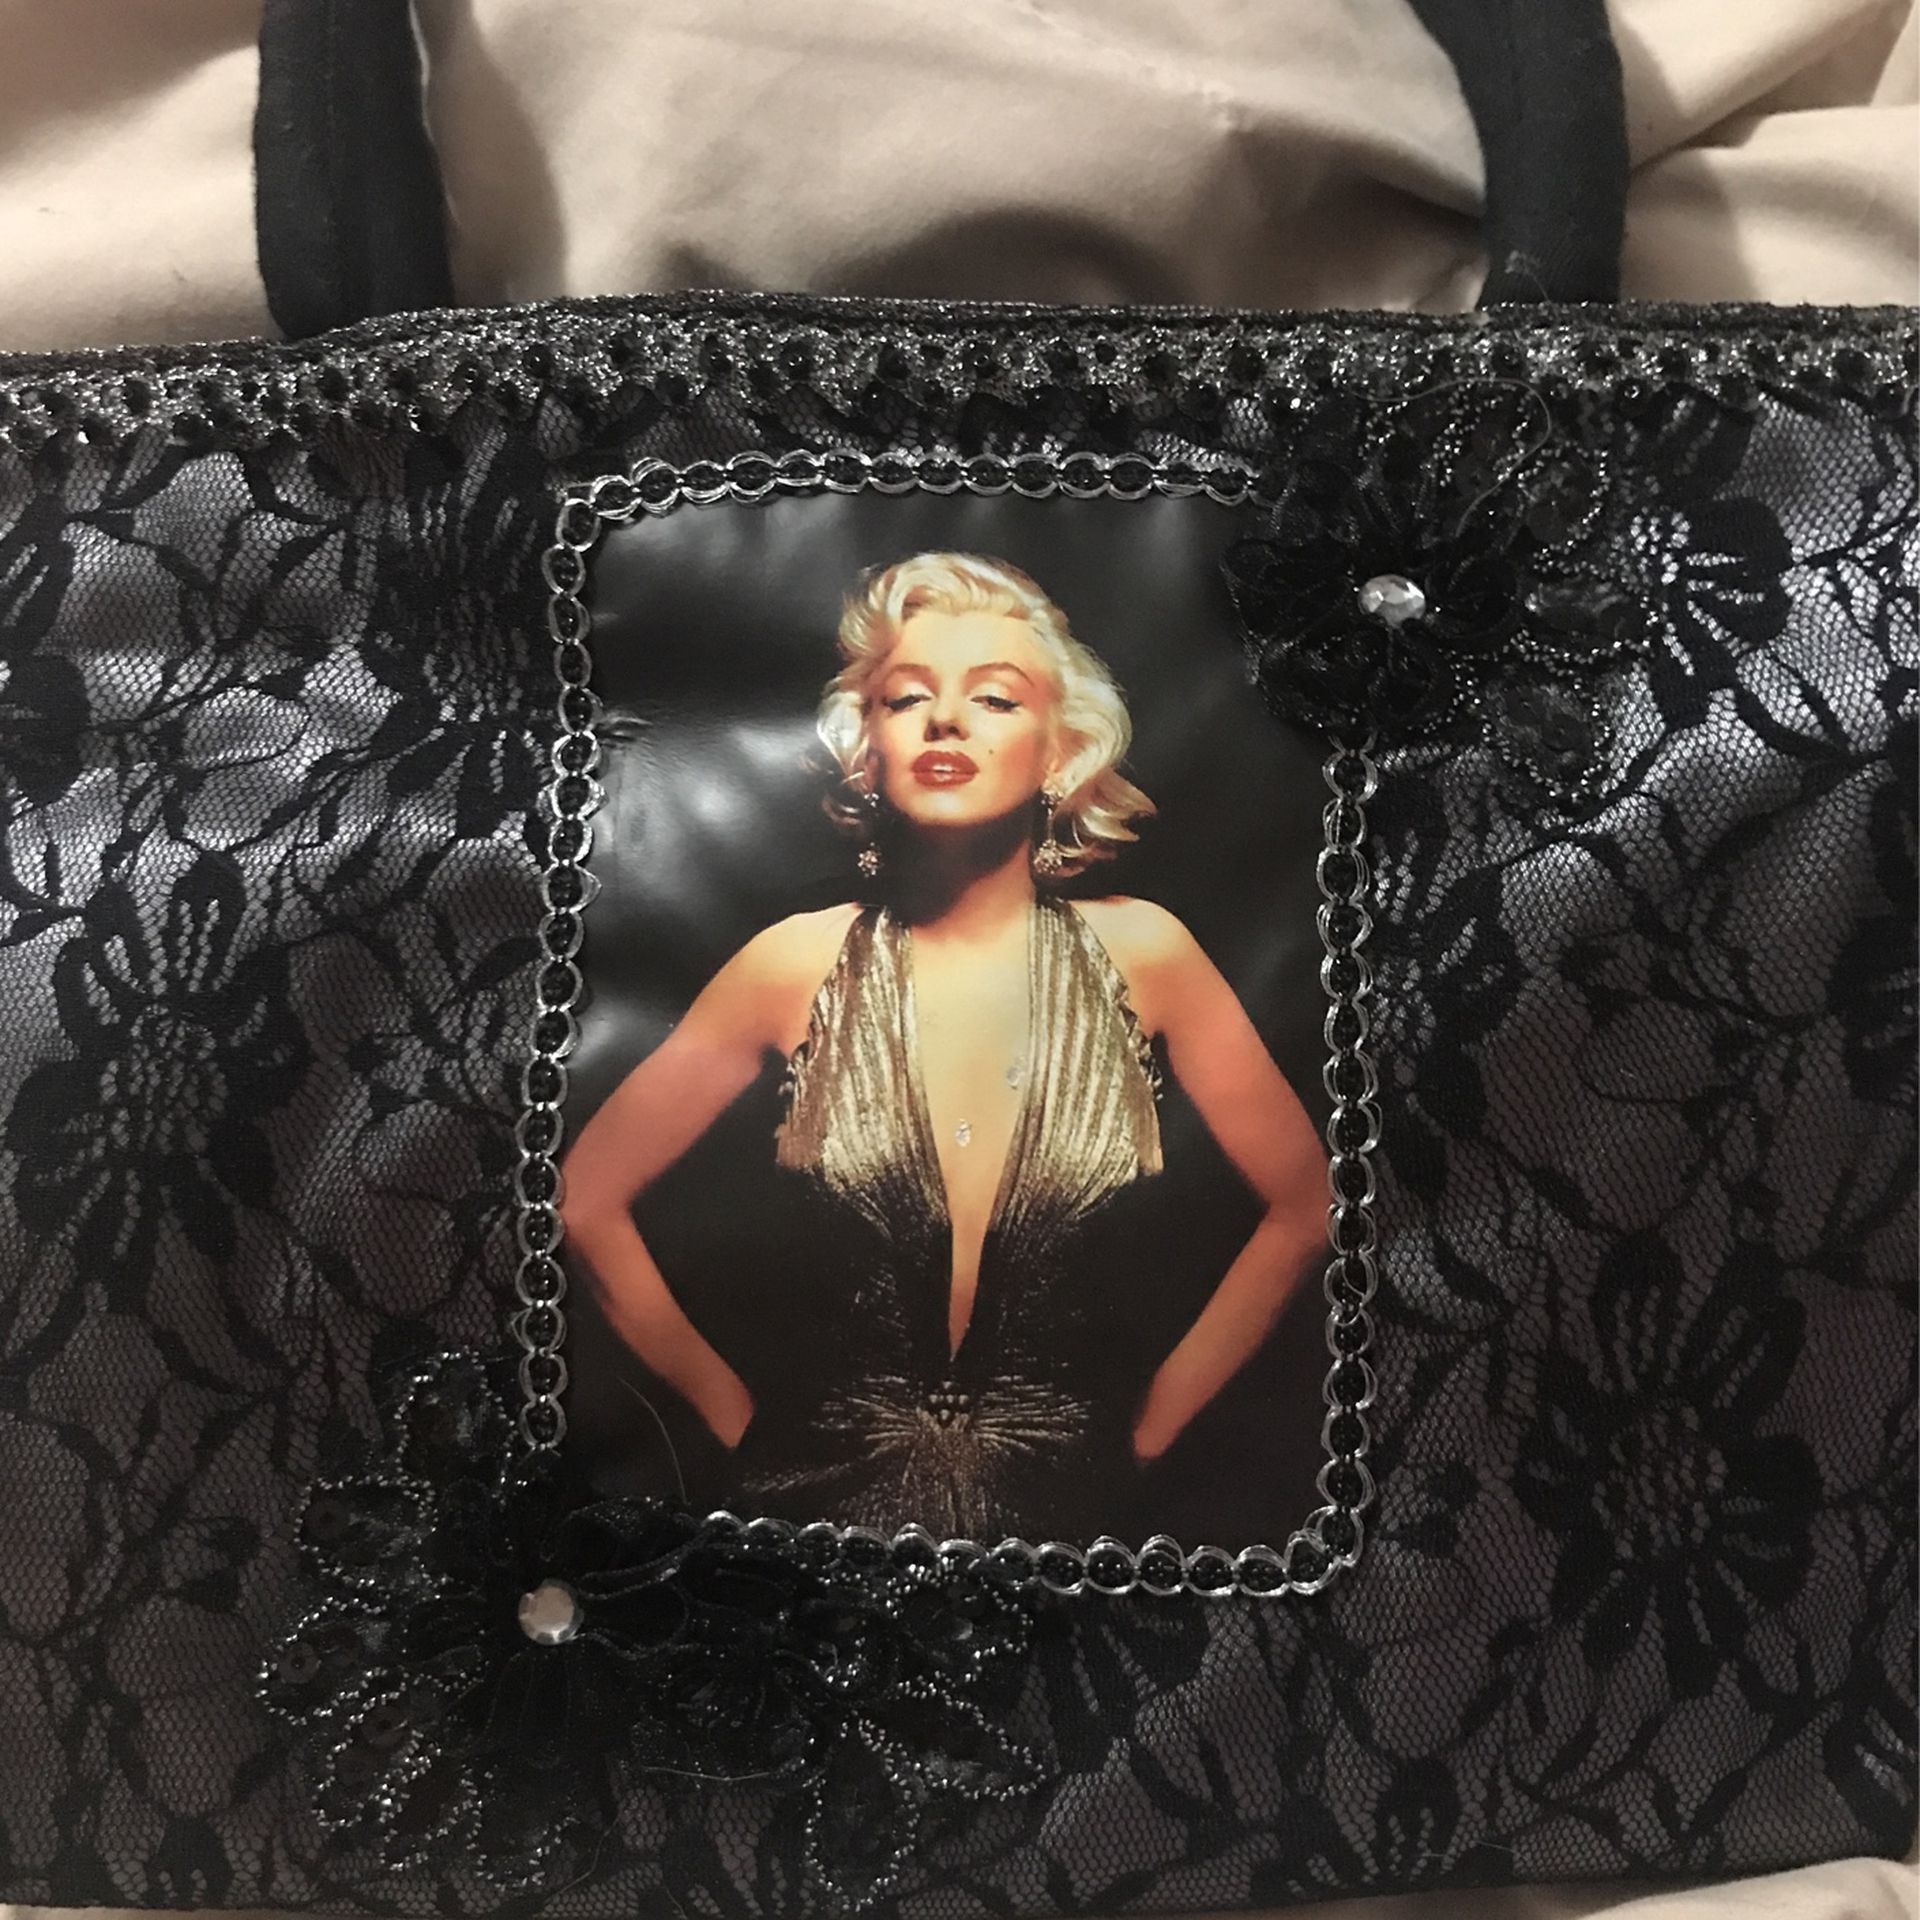 handbag marilyn monroe purse